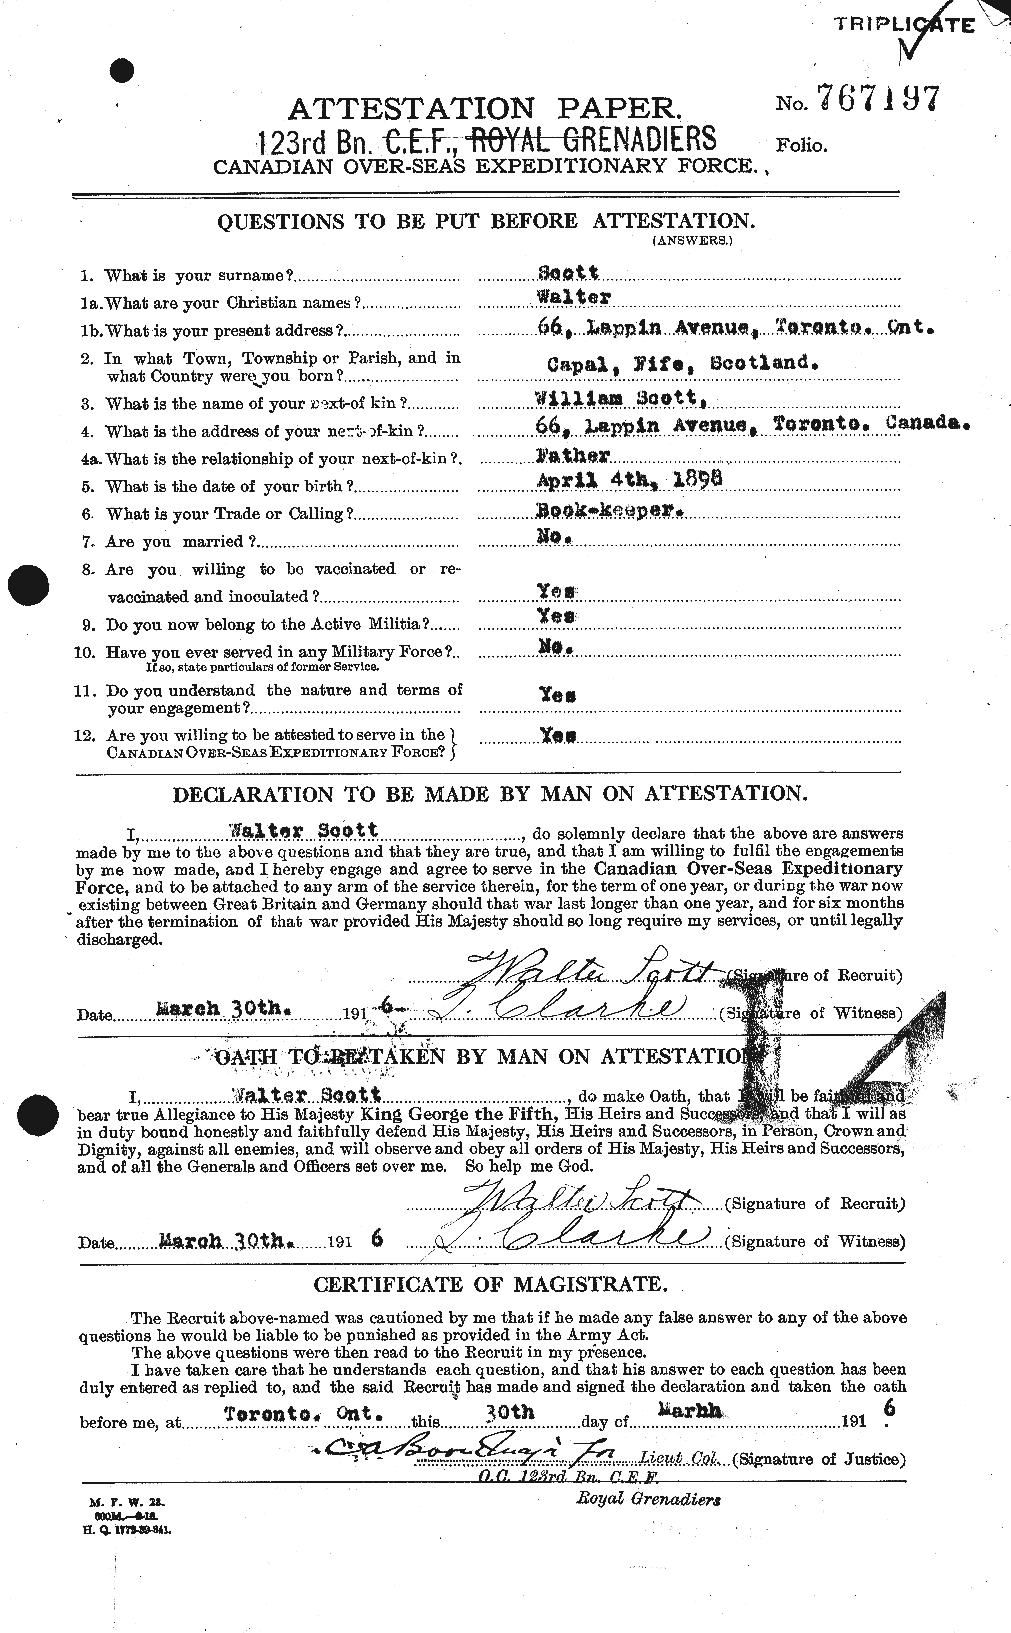 Dossiers du Personnel de la Première Guerre mondiale - CEC 088018a